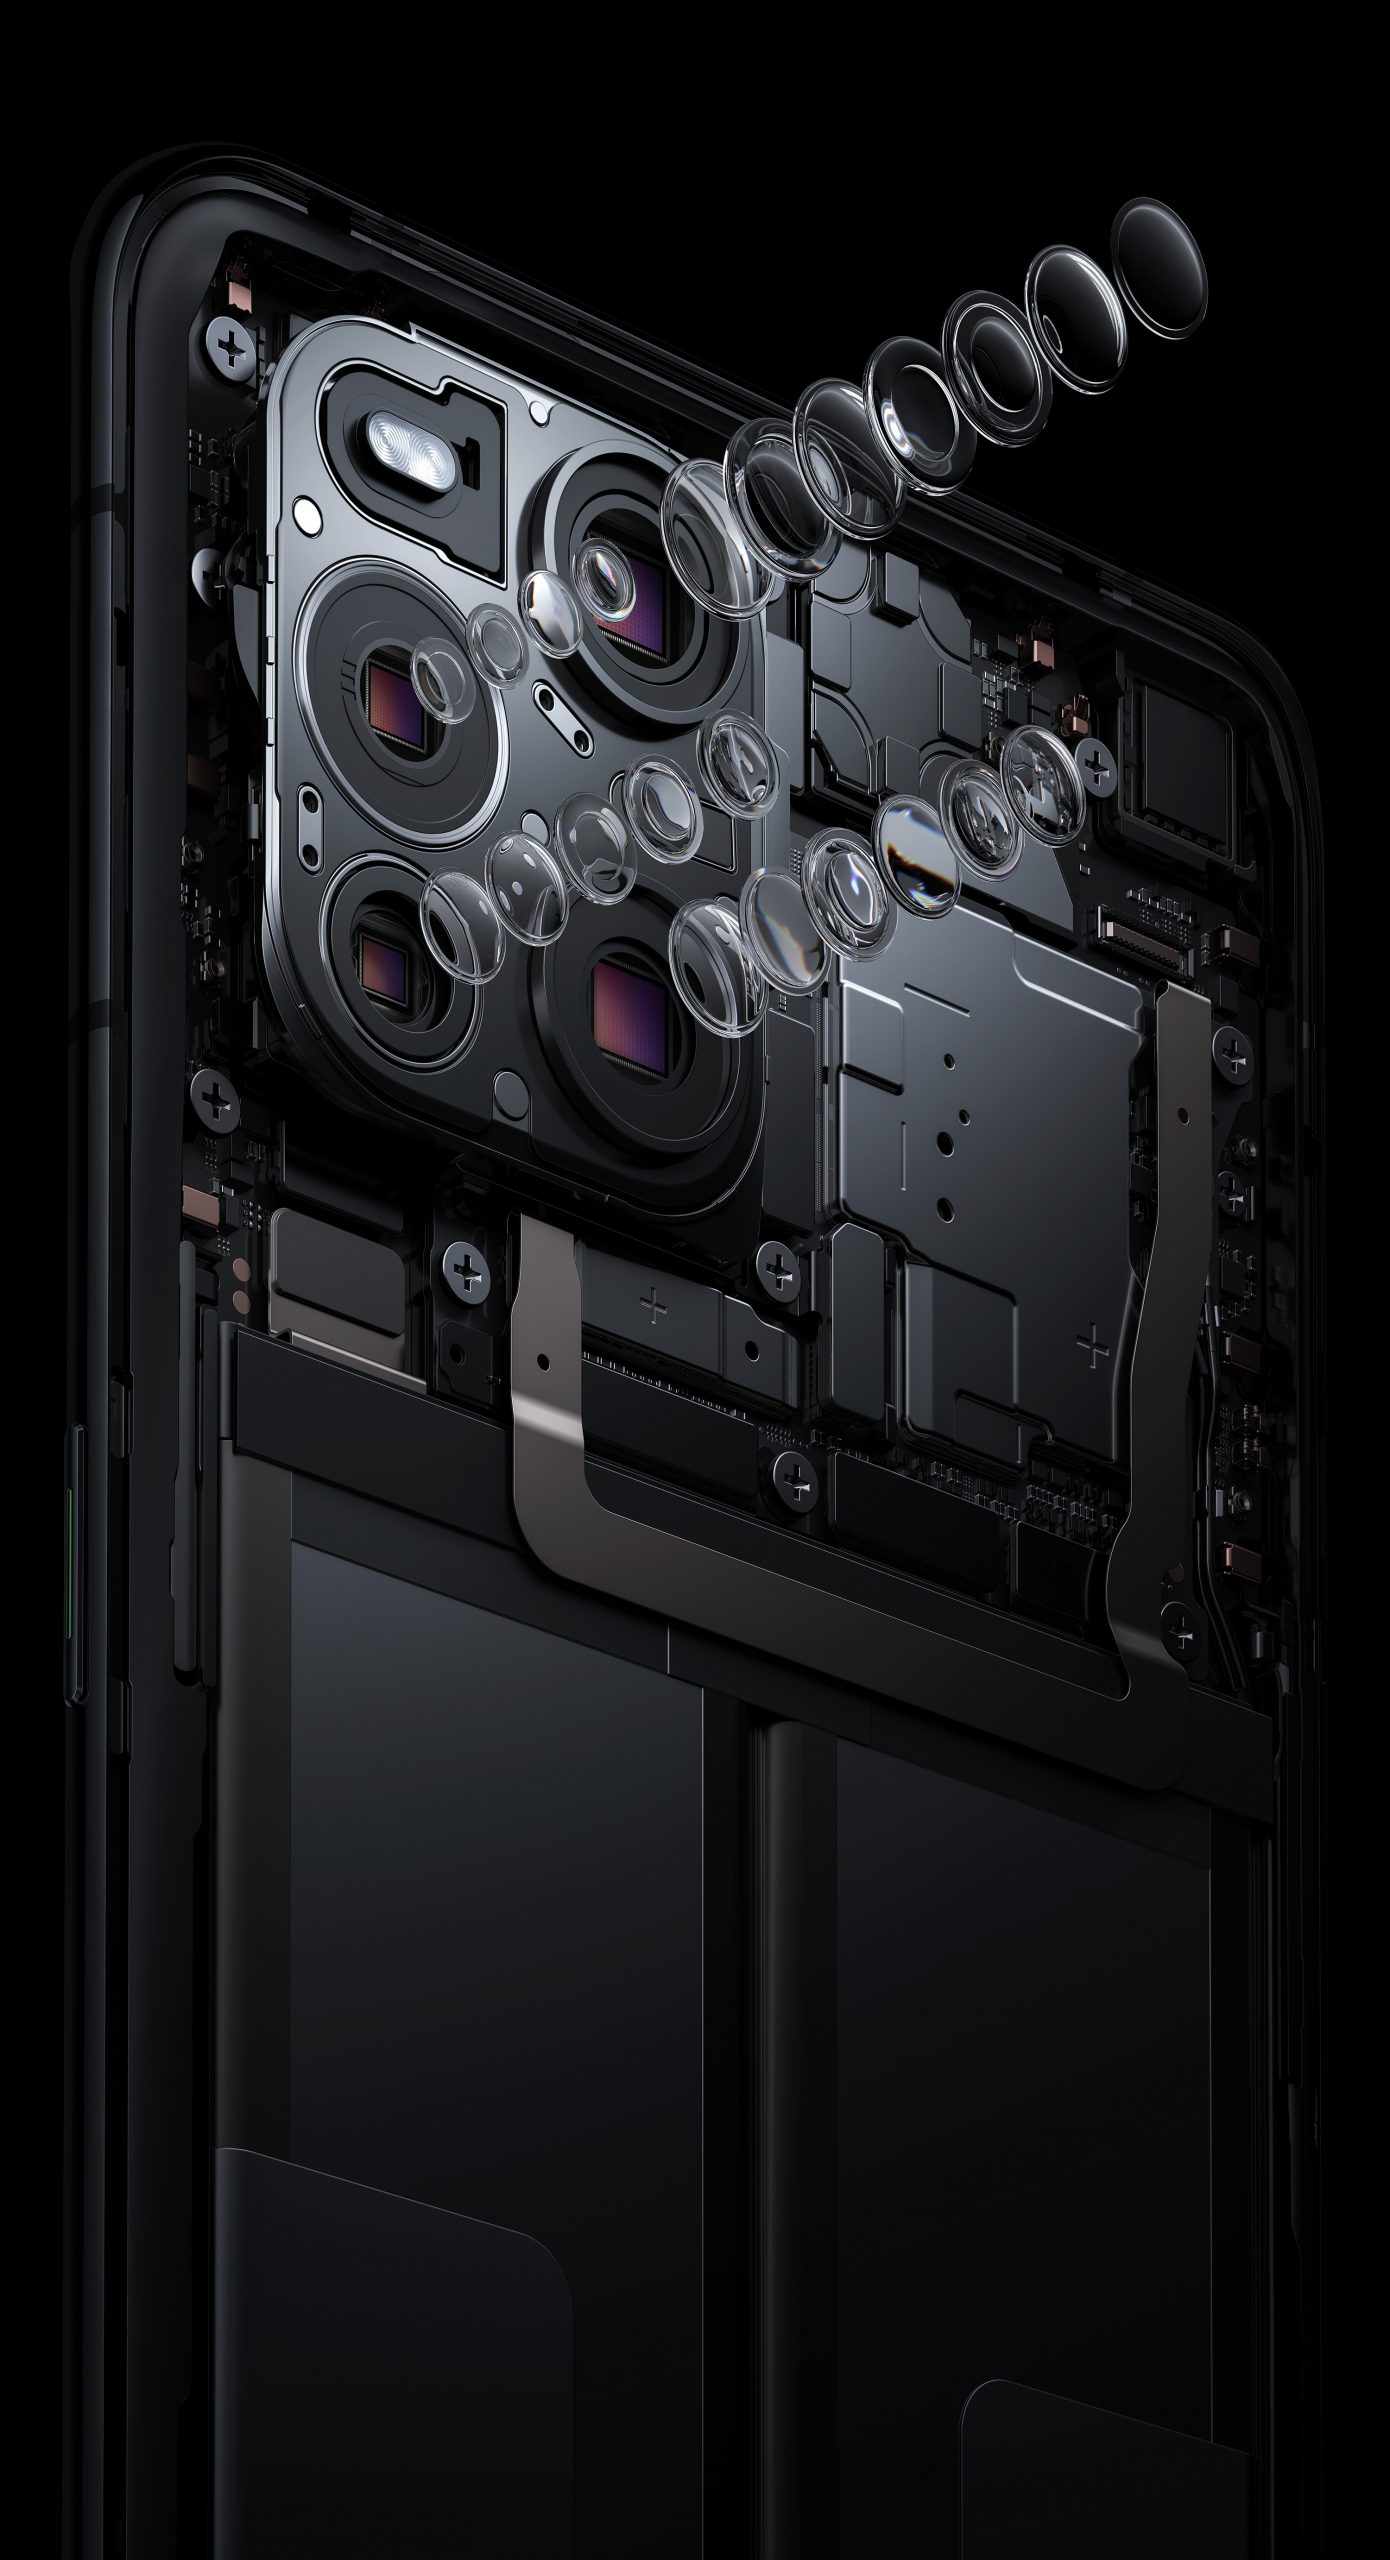 Camera hiển vi trên OPPO Find X3 Pro sẽ cho các bức ảnh cực kỳ thú vị